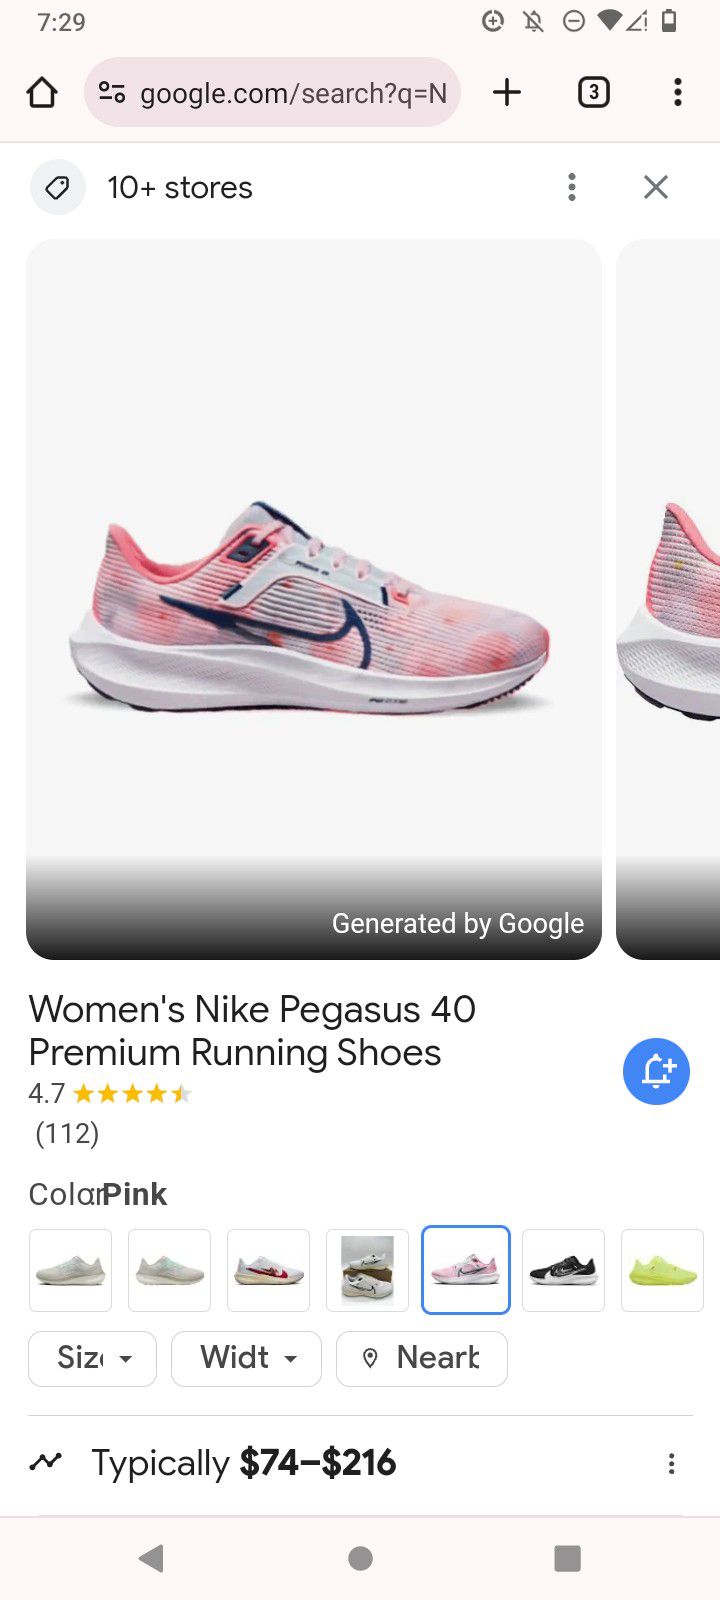 Women's Nike Pegasus 40